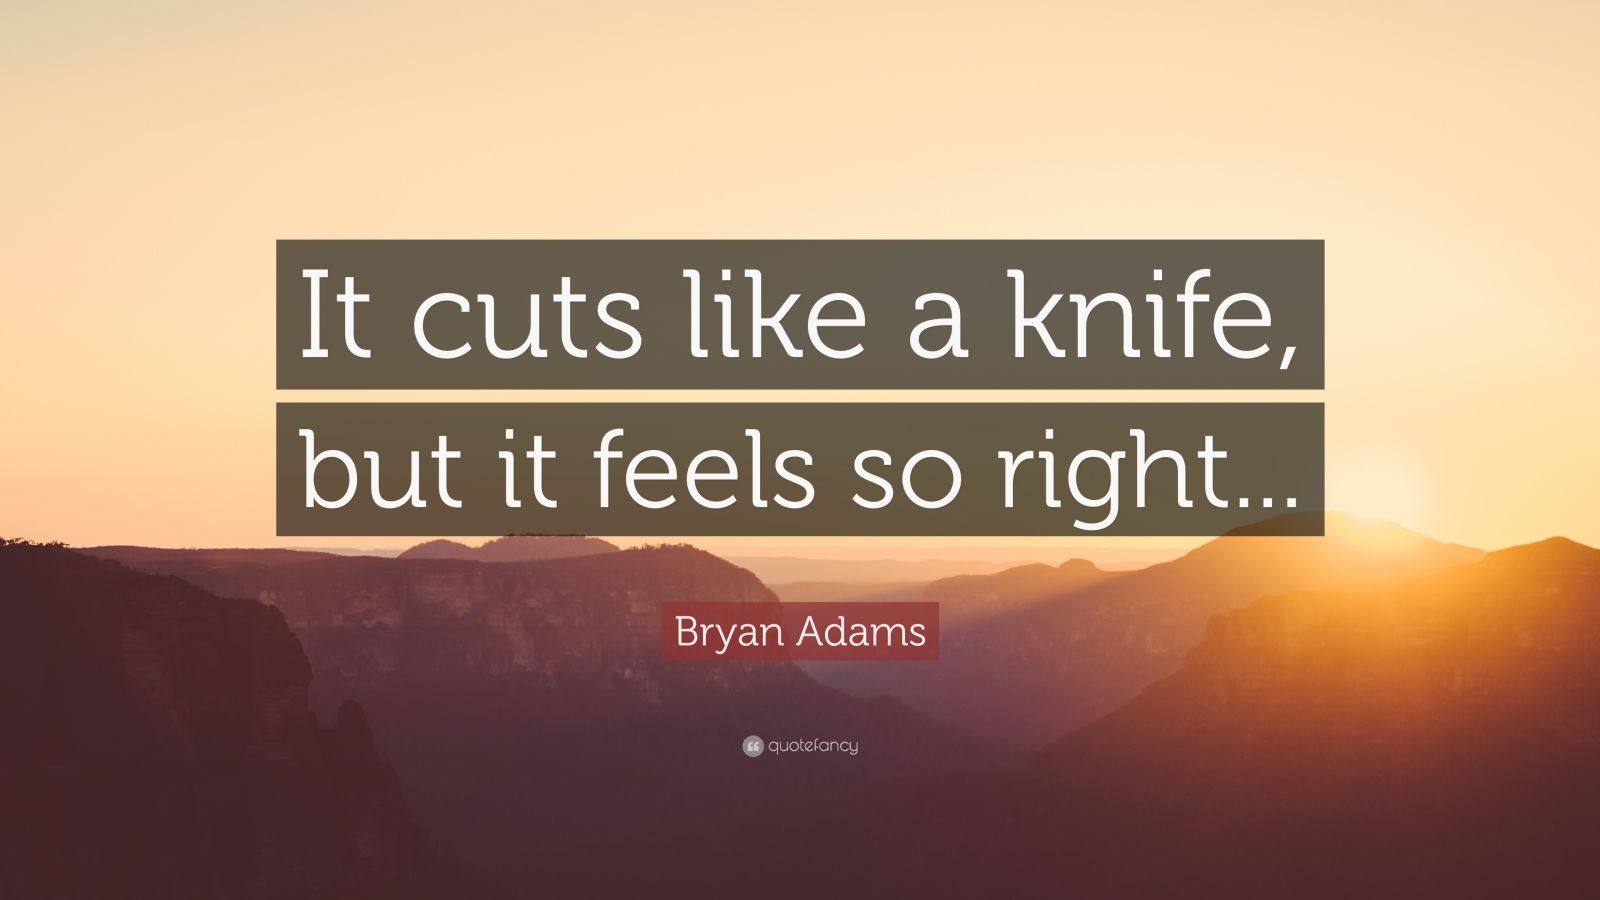 bryan adams cuts like a knife